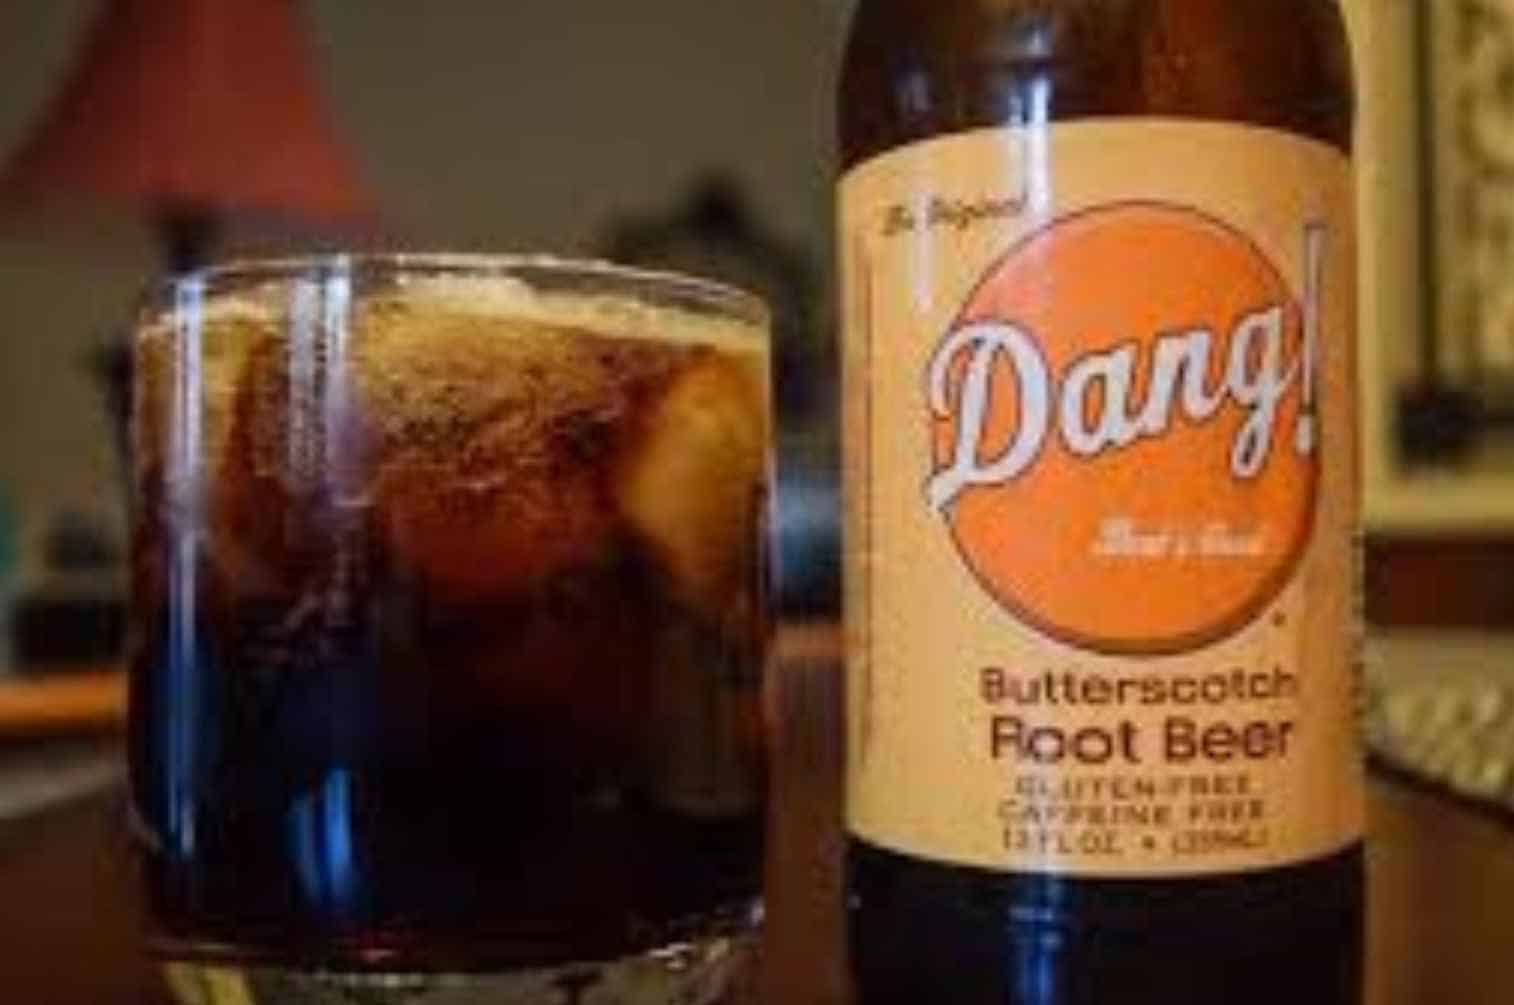 Dang Butterscotch Root Beer